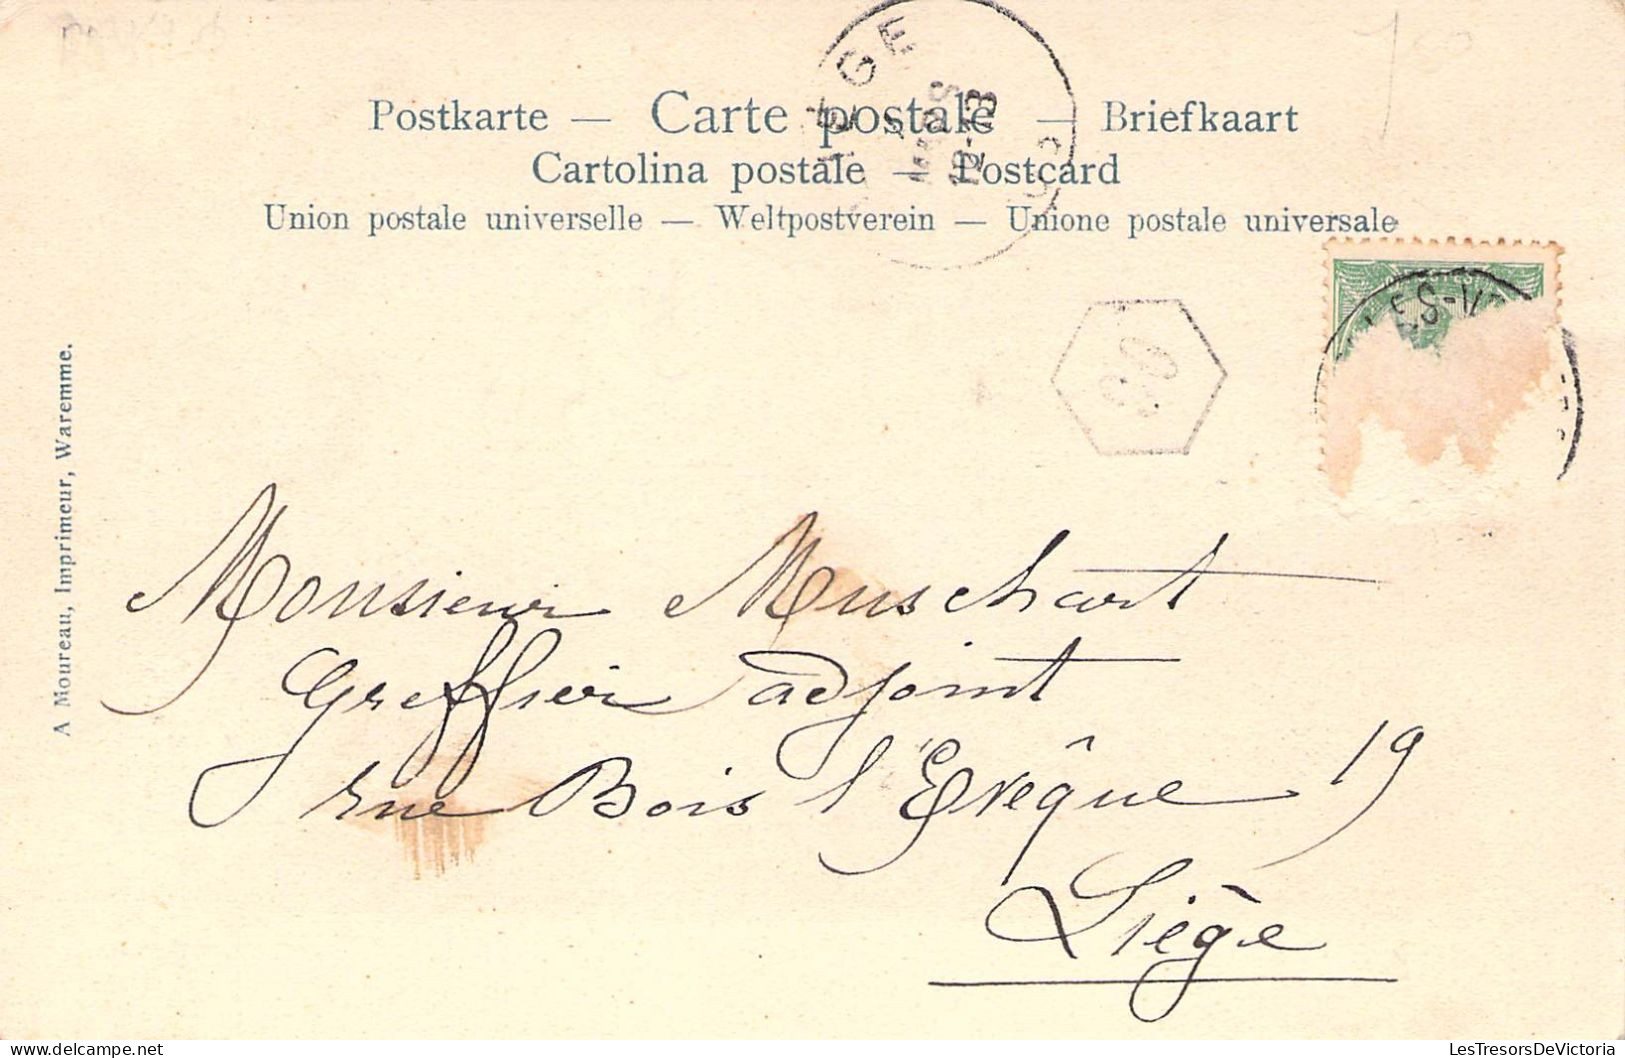 Belgique - Waremme - Gare Vicinale - Animé - A. Moureau -  Carte Postale Ancienne - Waremme